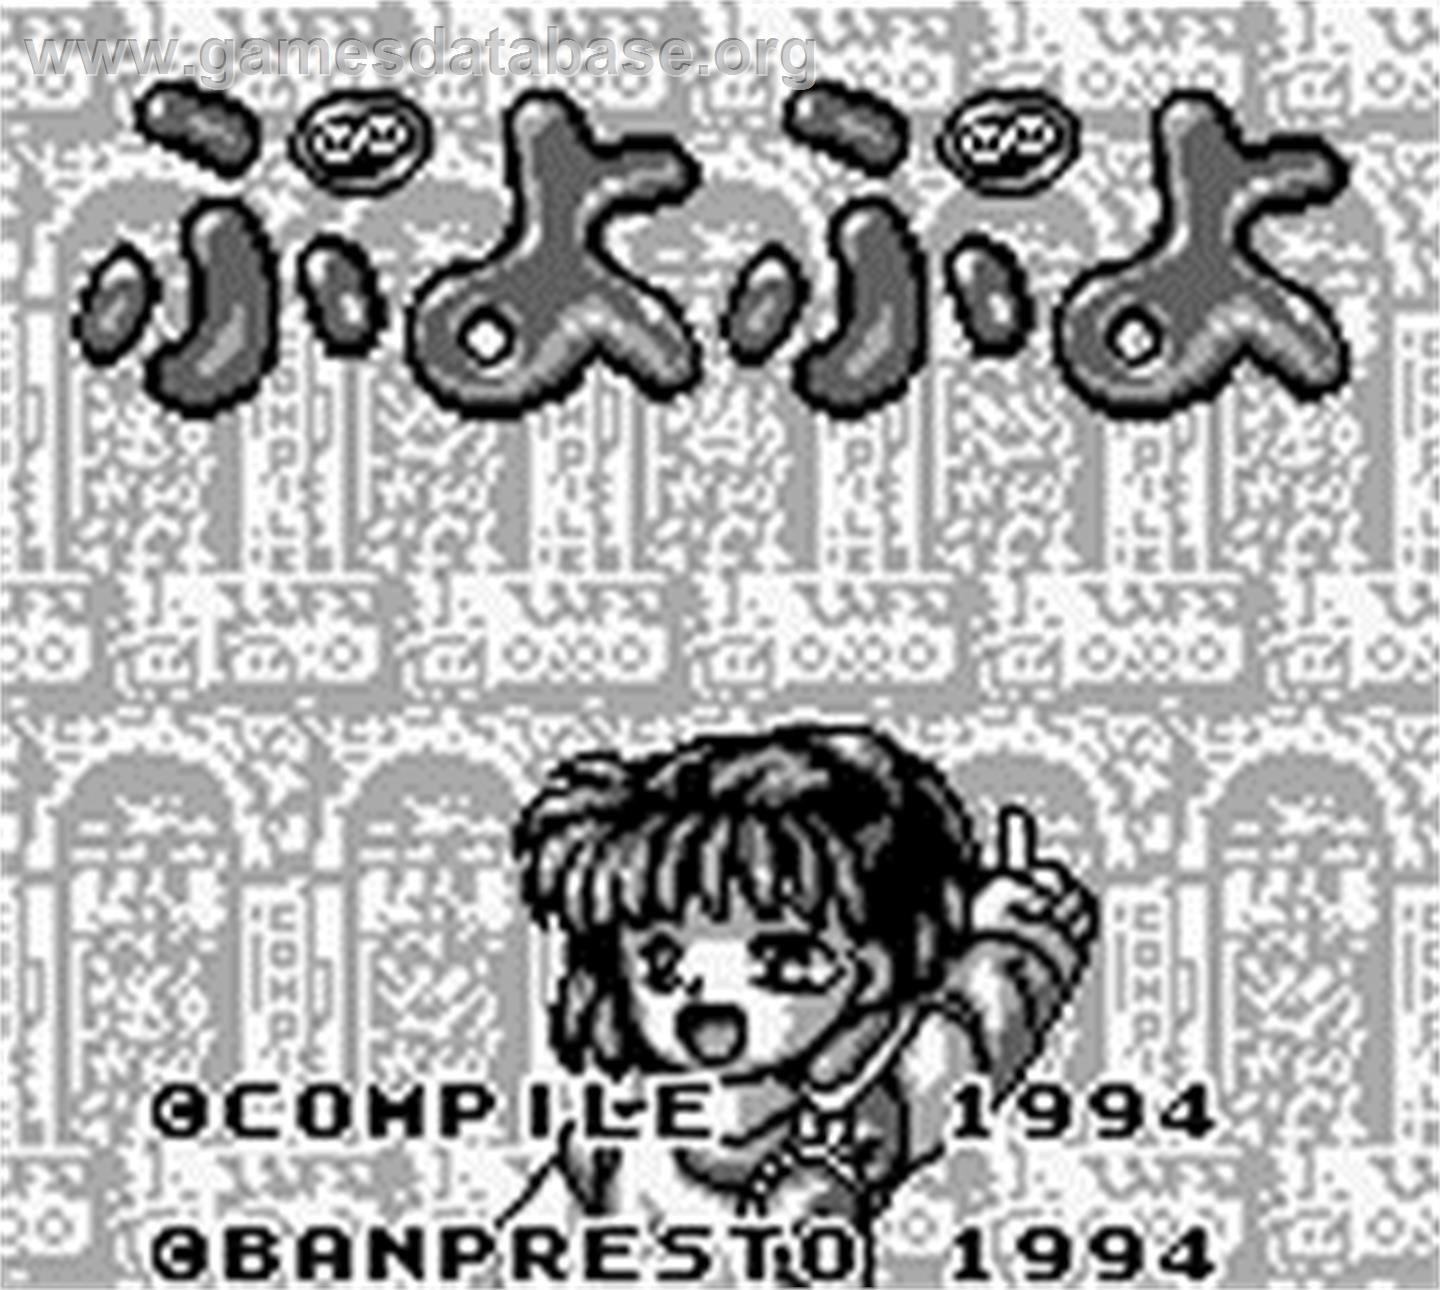 Puyo Puyo - Nintendo Game Boy - Artwork - Title Screen